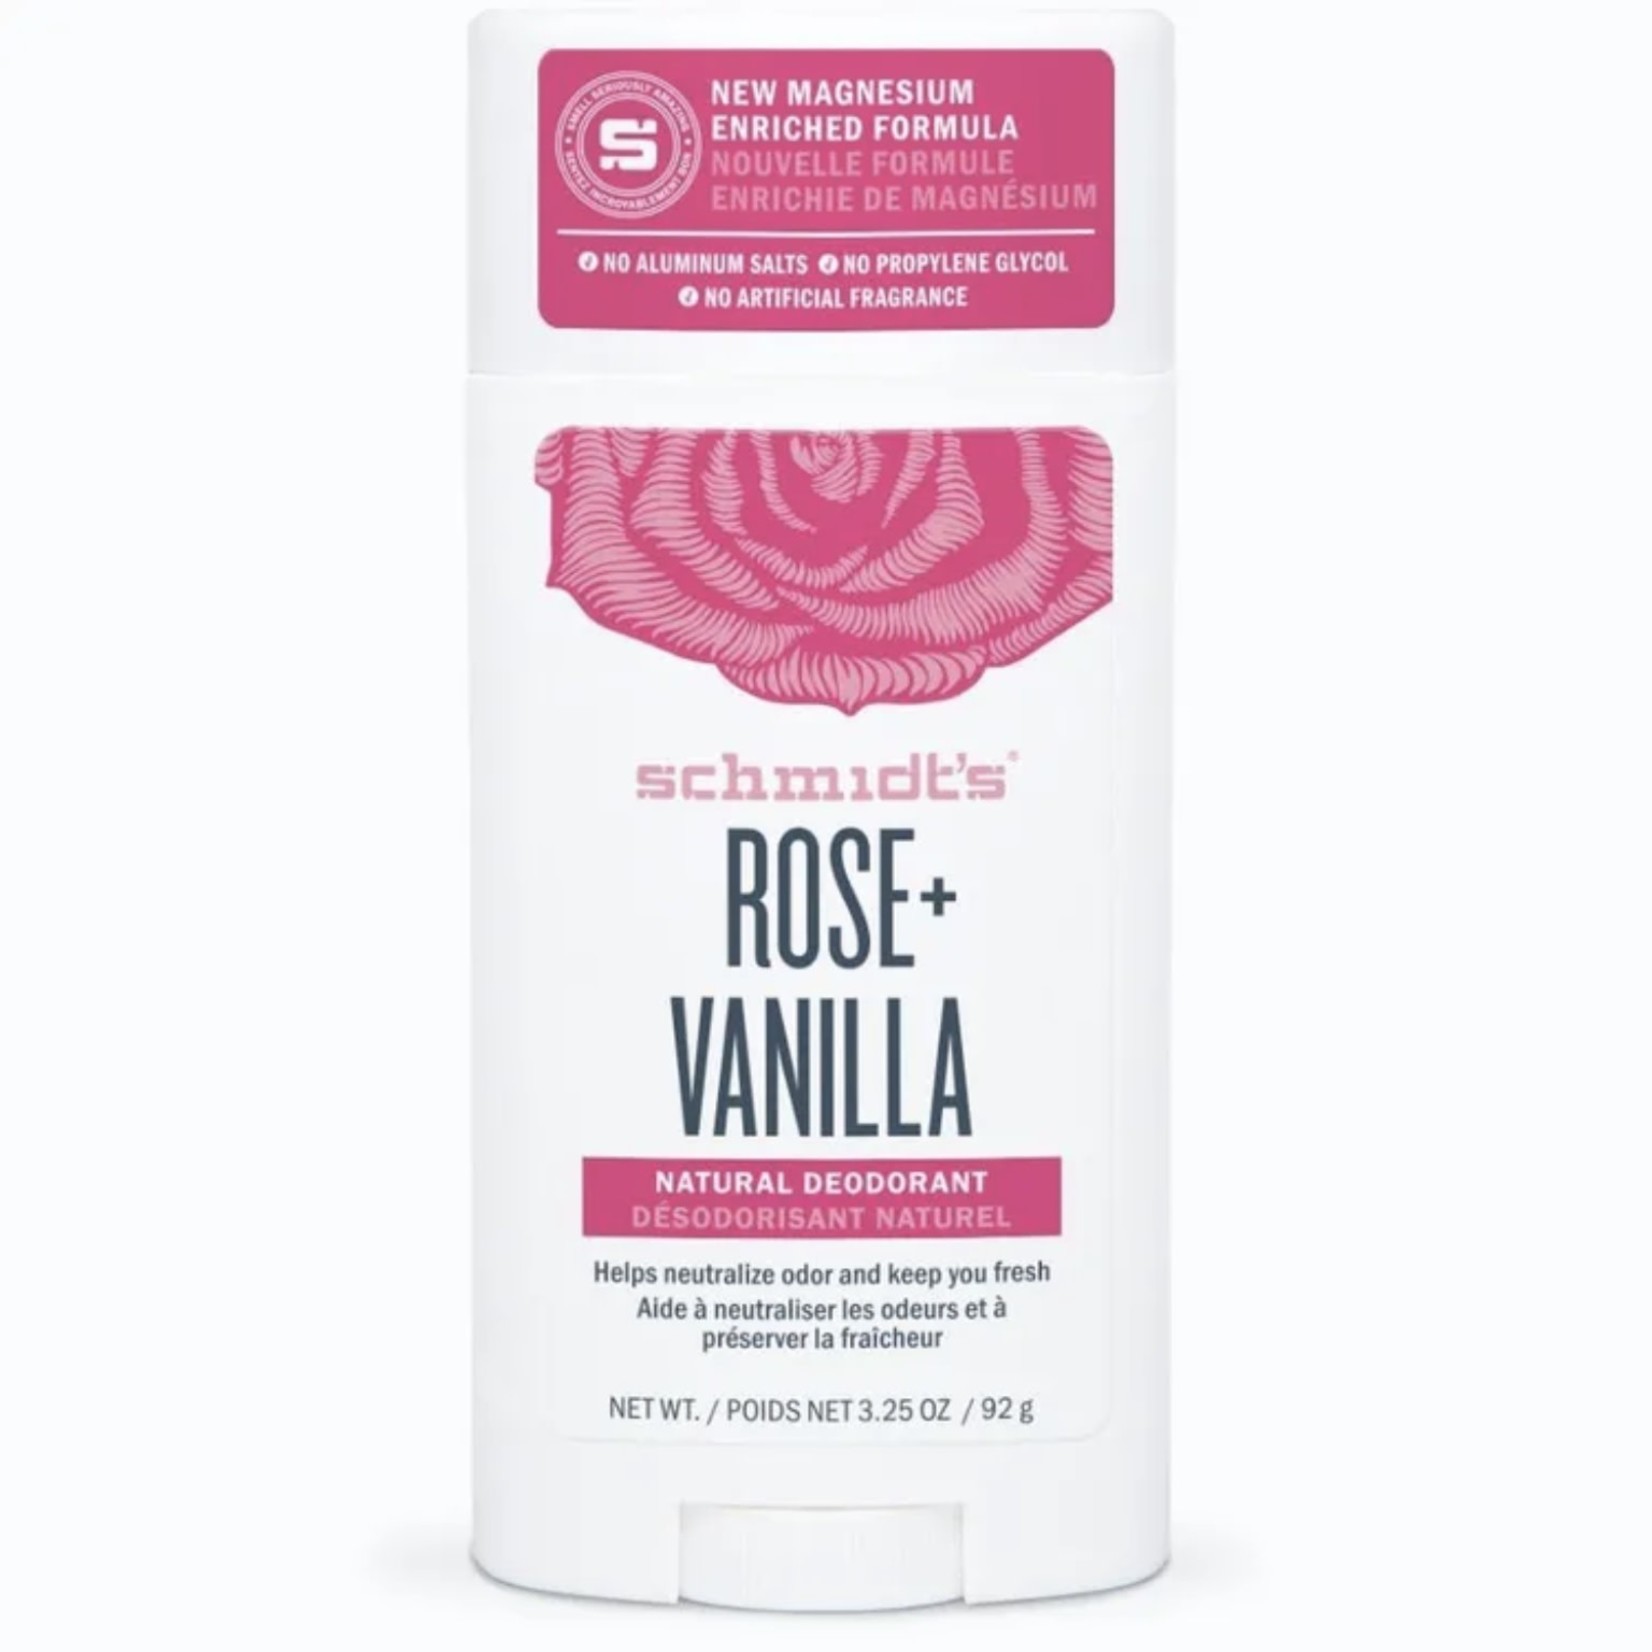 Schmidt’s Schmidt’s Rose + Vanilla Deodorant